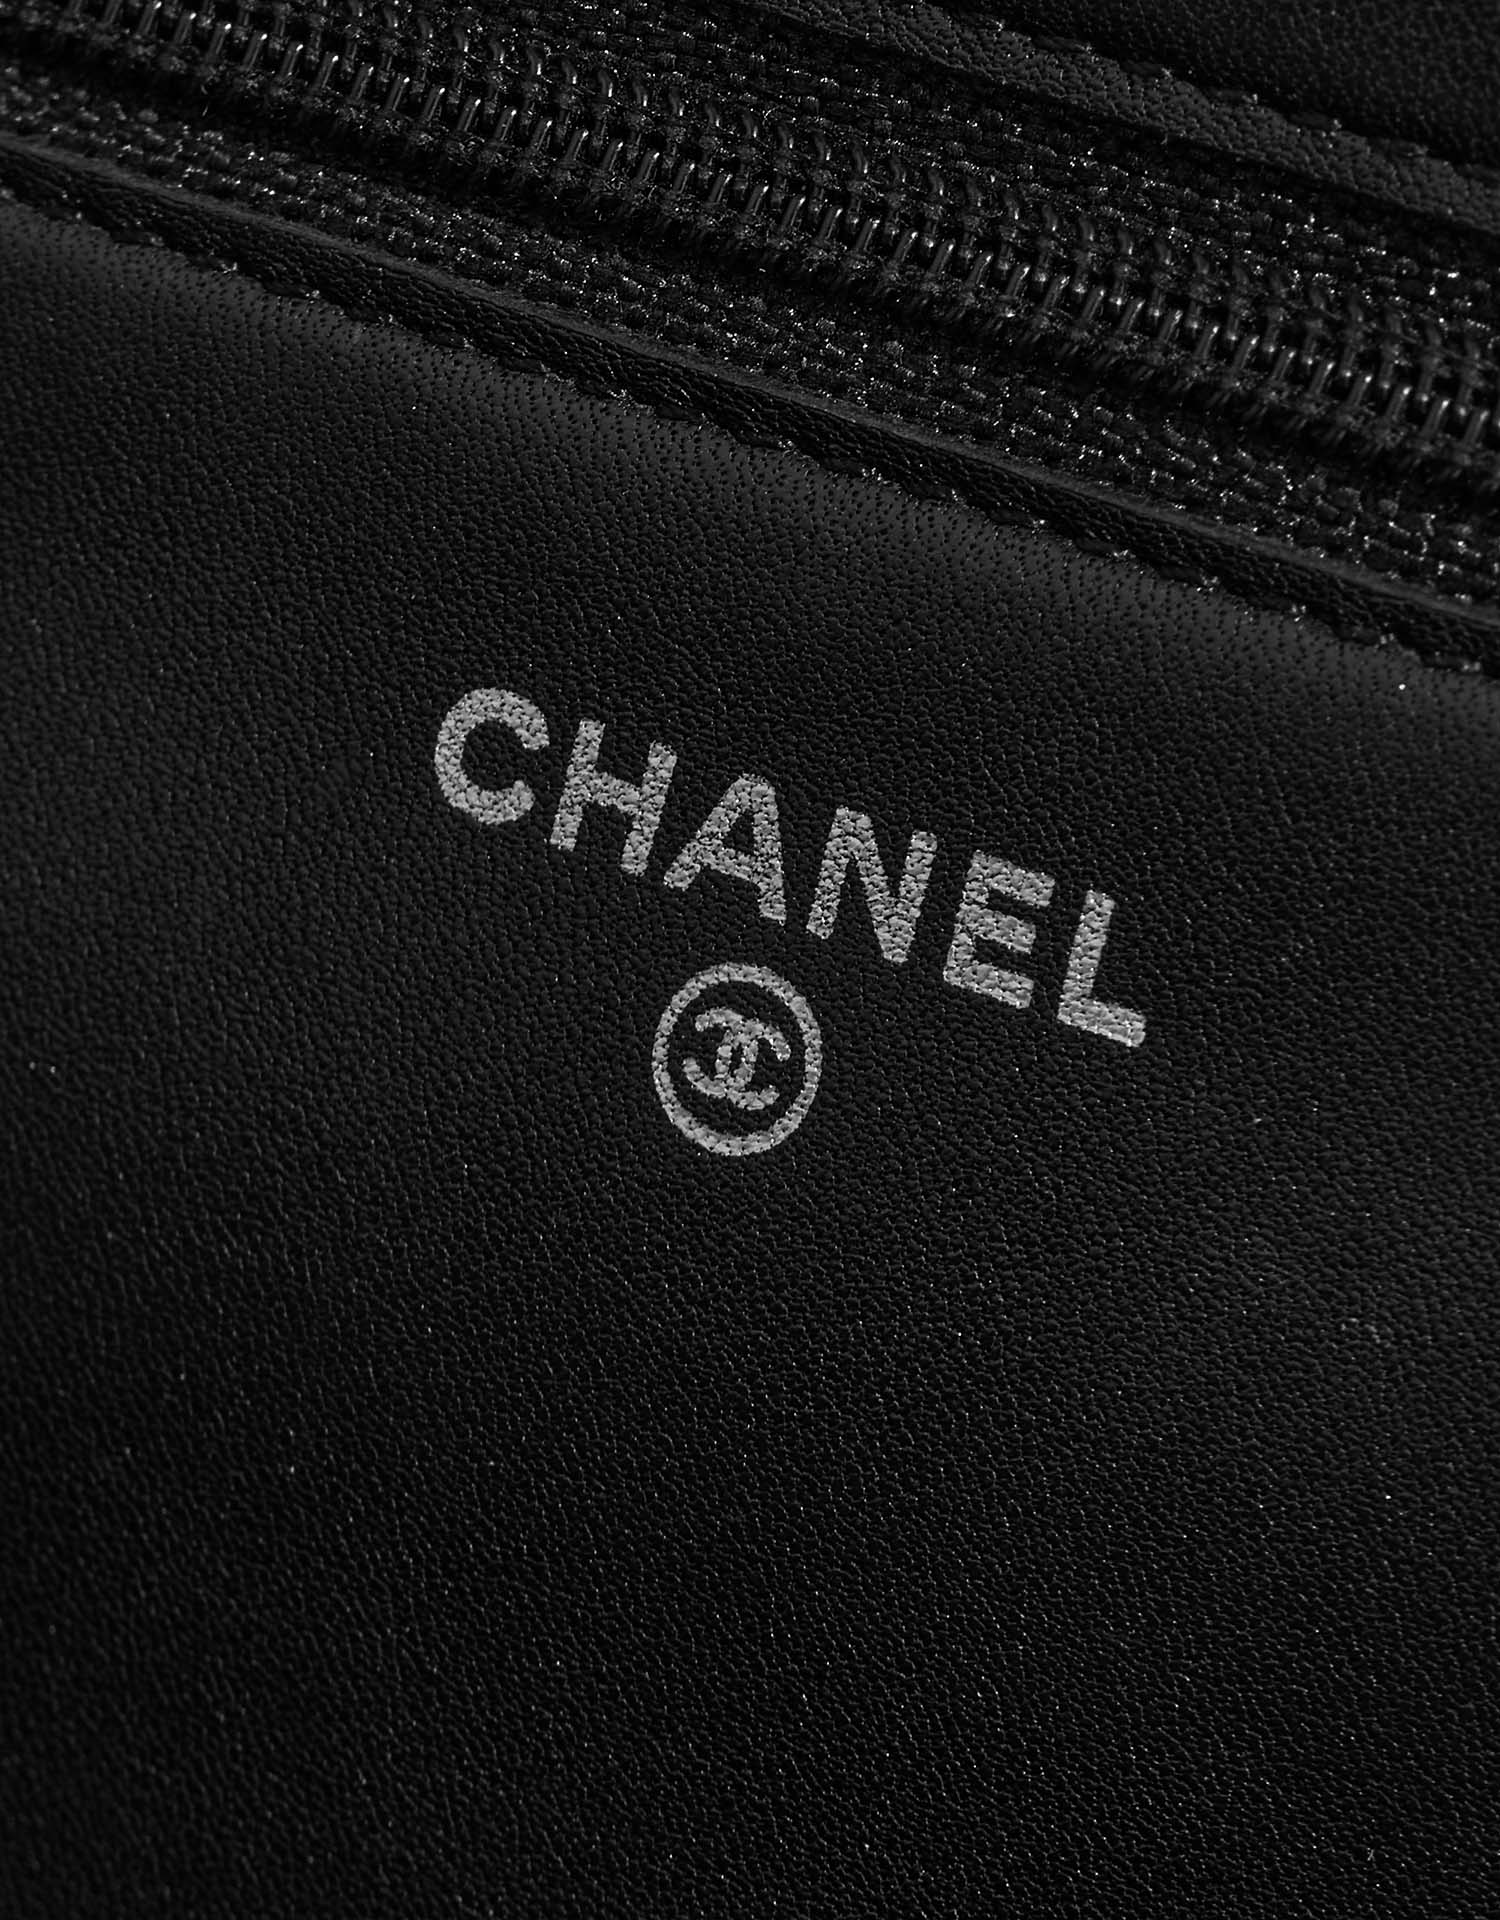 Chanel WOC Black Logo | Verkaufen Sie Ihre Designertasche auf Saclab.com